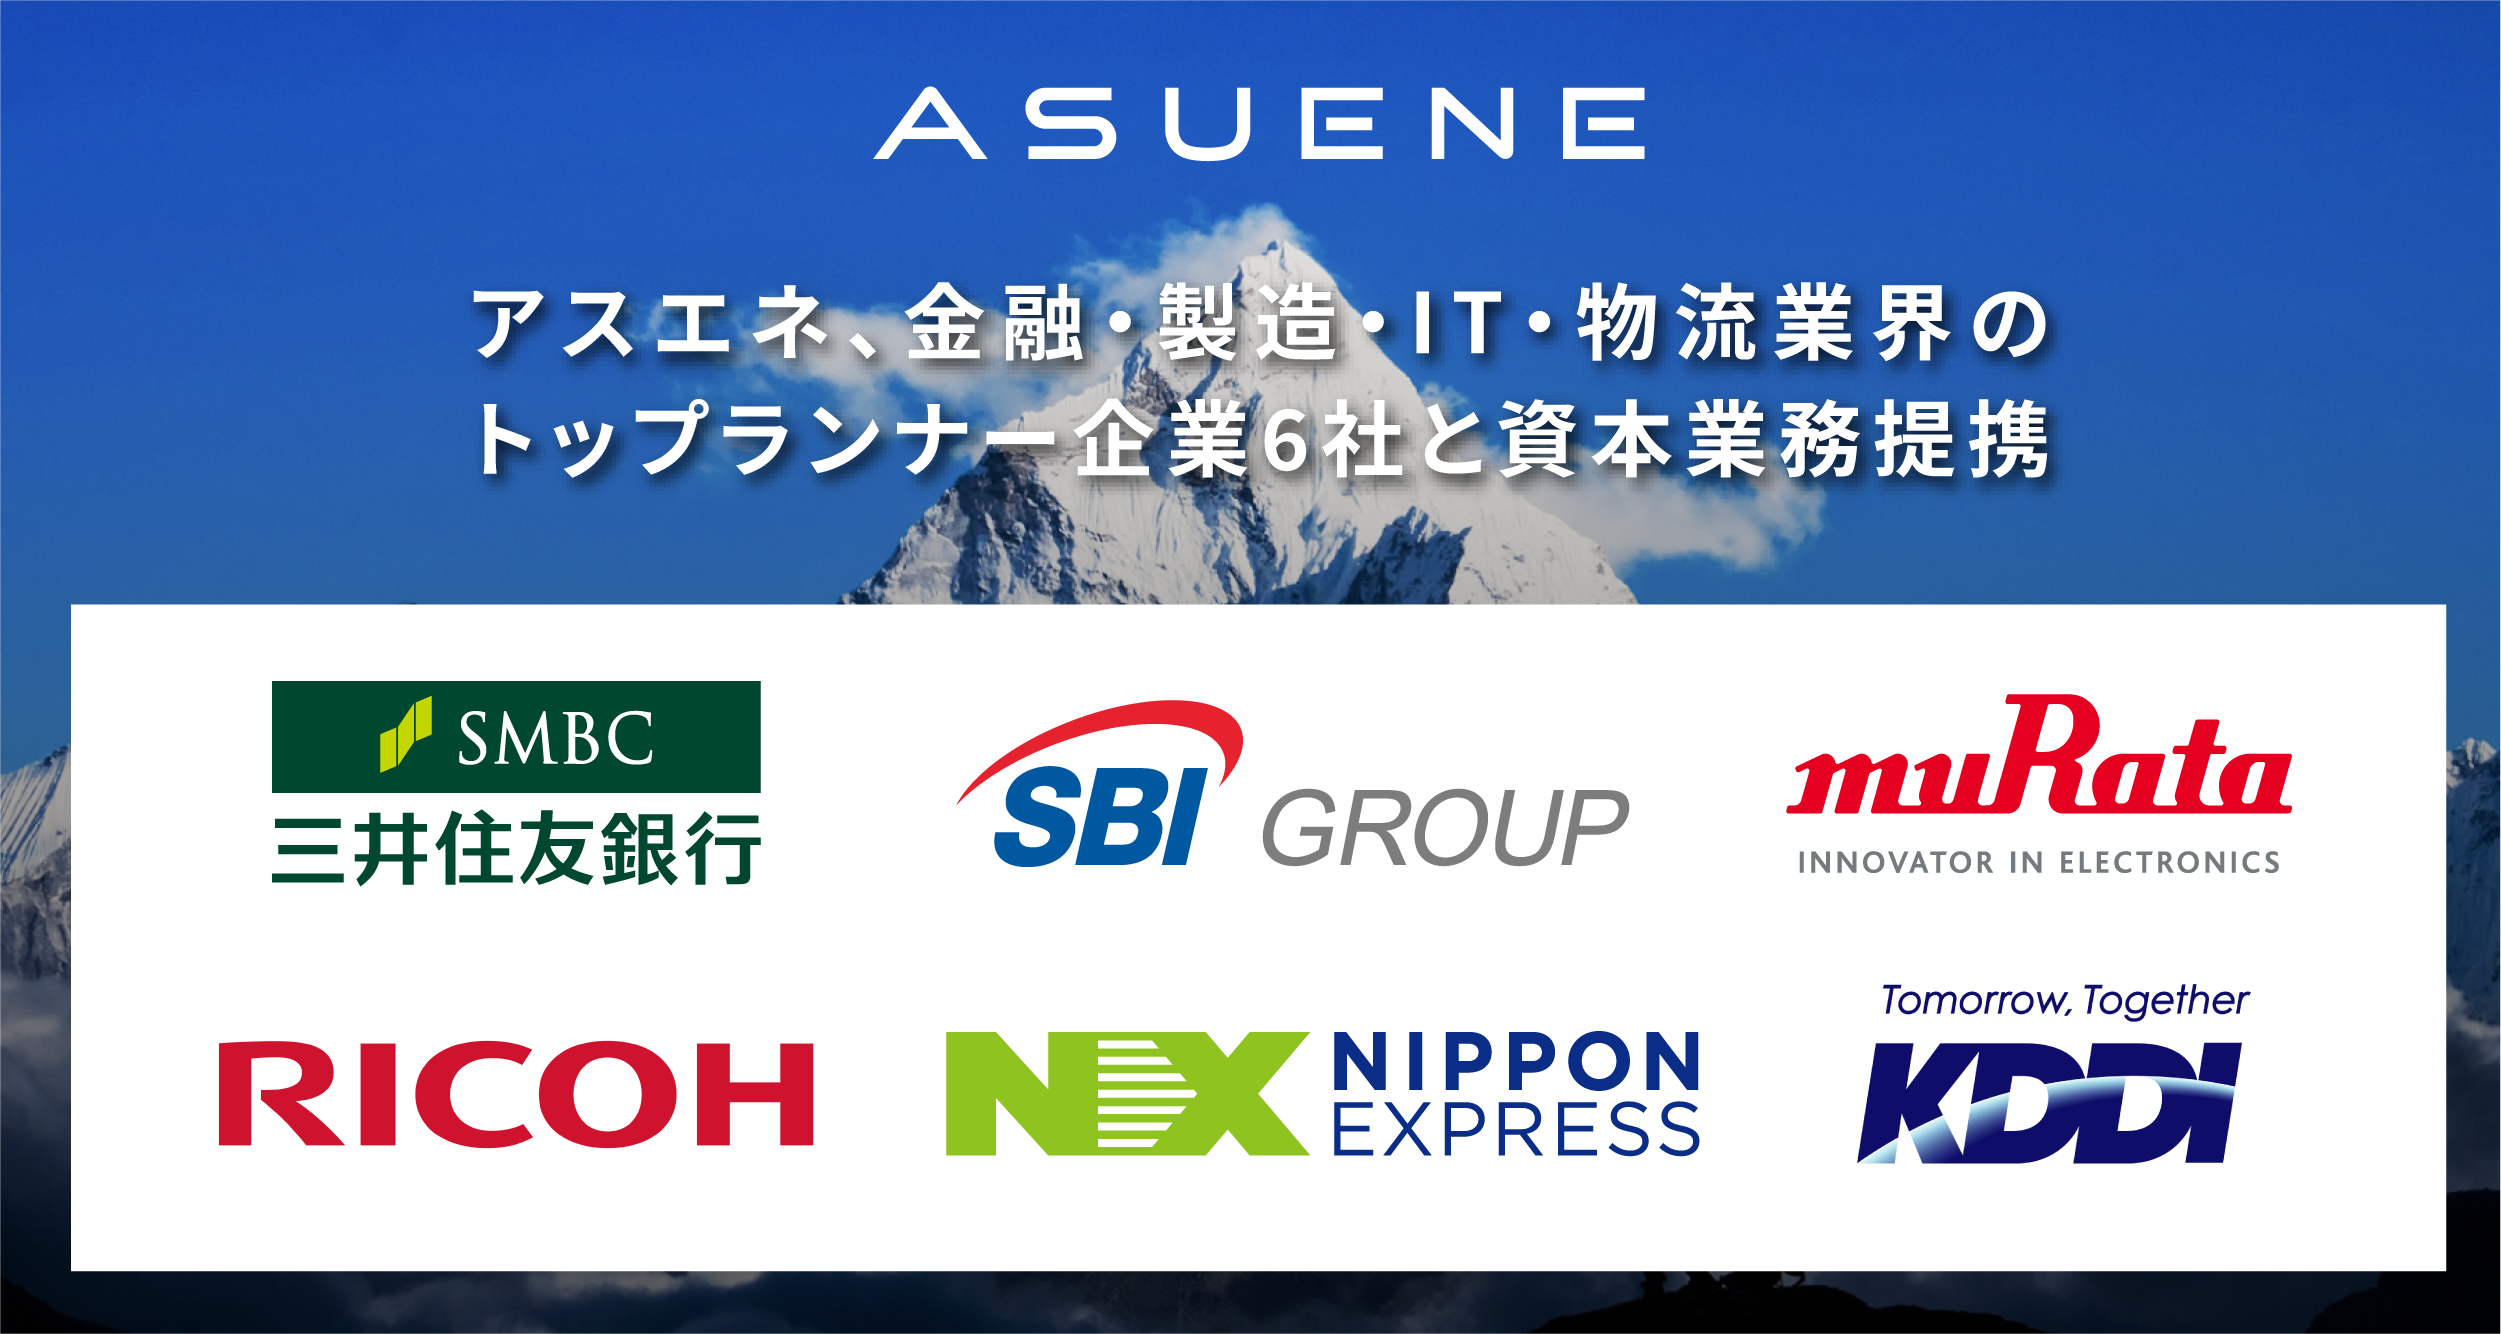 アスエネ、三井住友銀行をはじめとする金融・製造・IT・物流など業界のトップランナー企業6社と資本業務提携